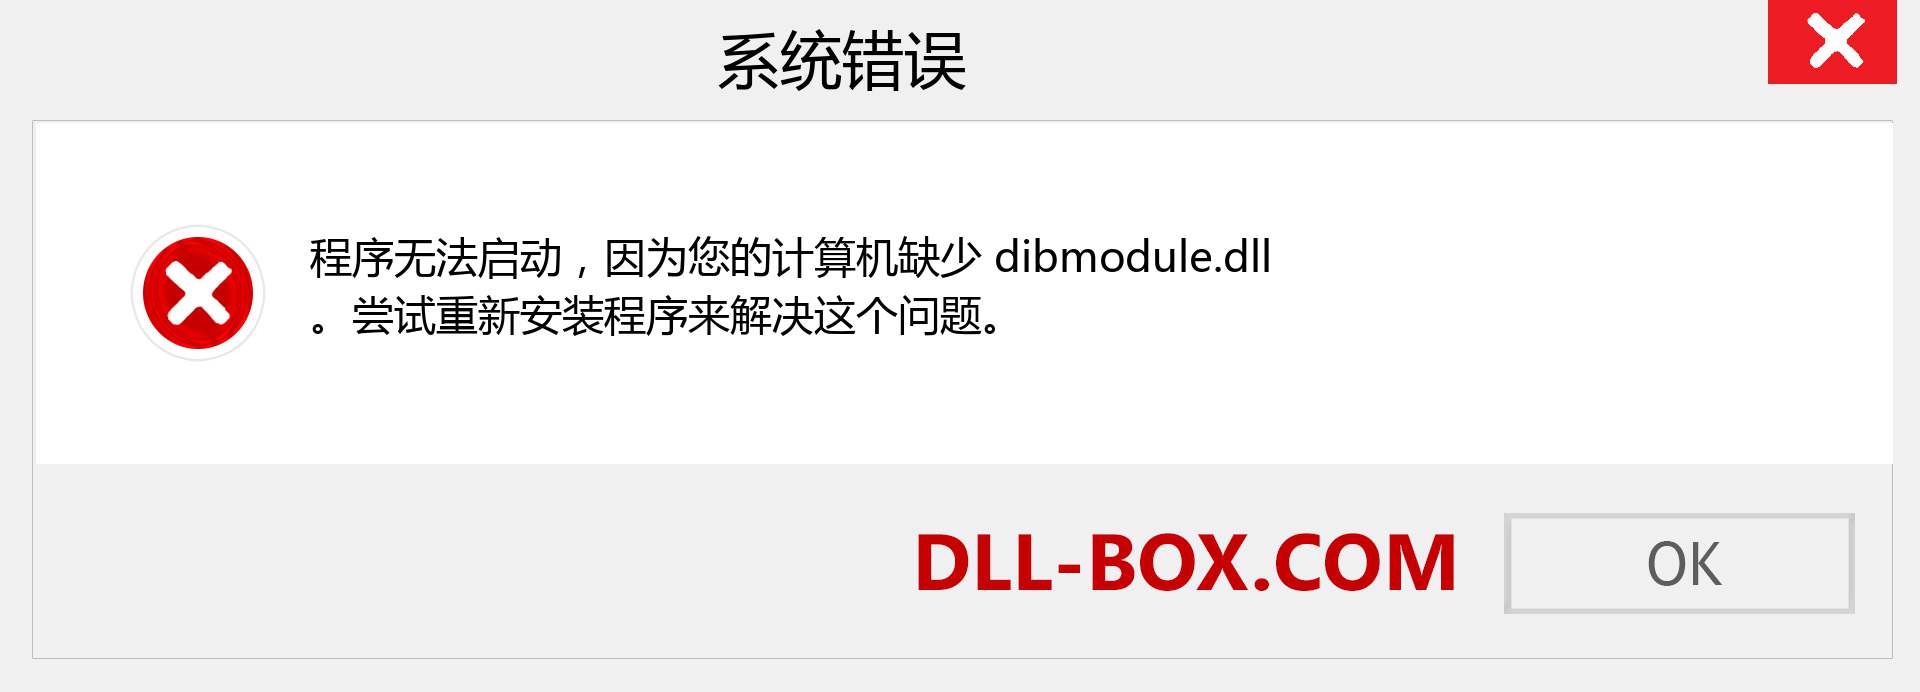 dibmodule.dll 文件丢失？。 适用于 Windows 7、8、10 的下载 - 修复 Windows、照片、图像上的 dibmodule dll 丢失错误